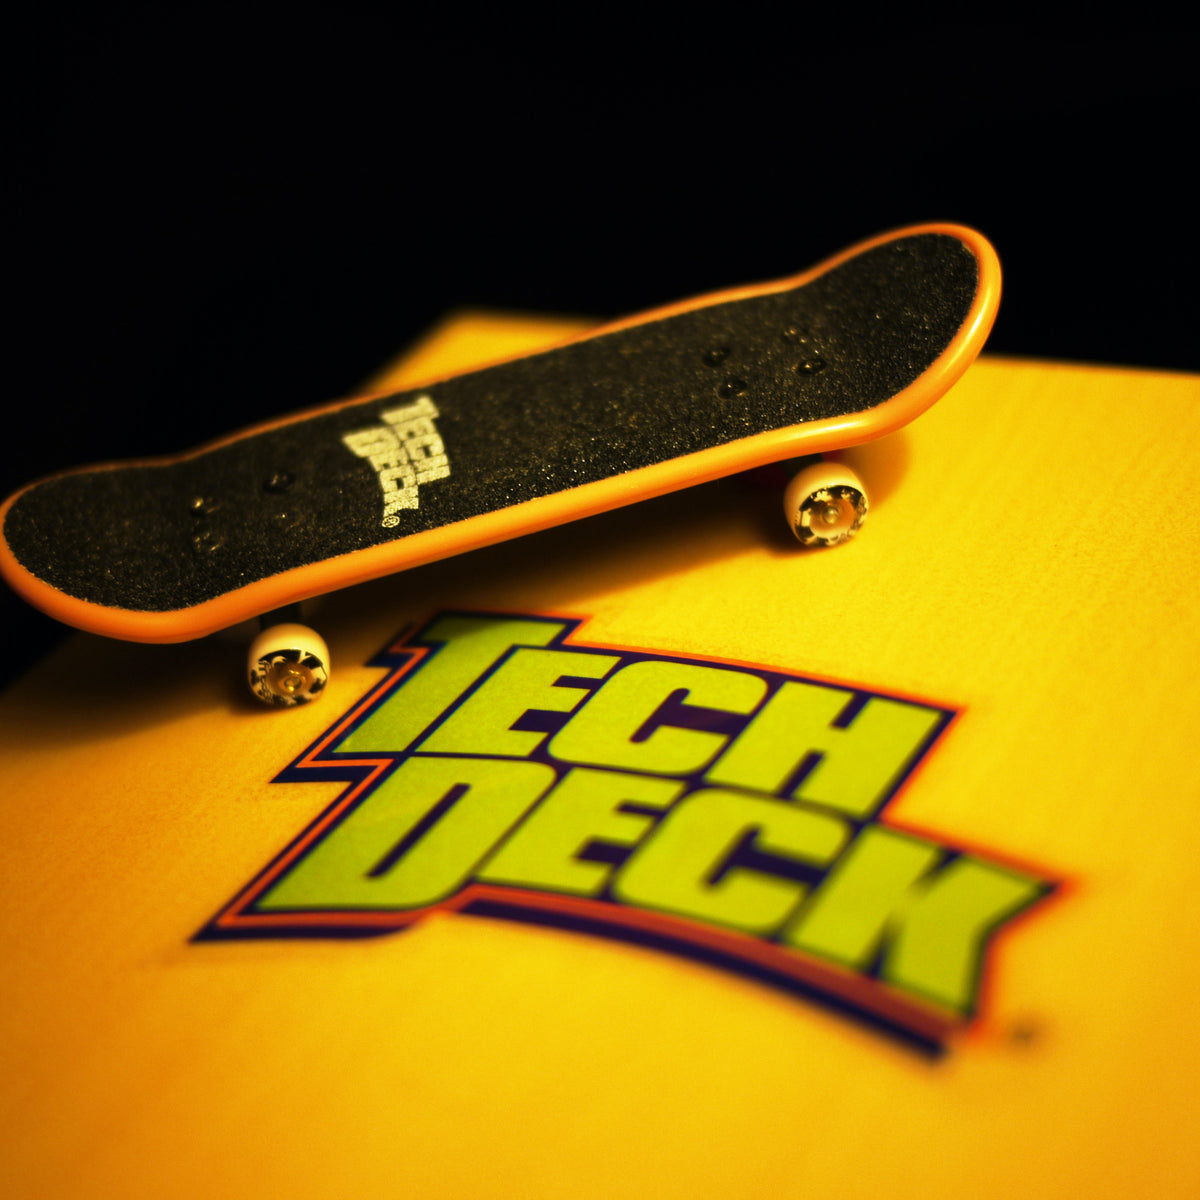 Tech Deck – Skate East